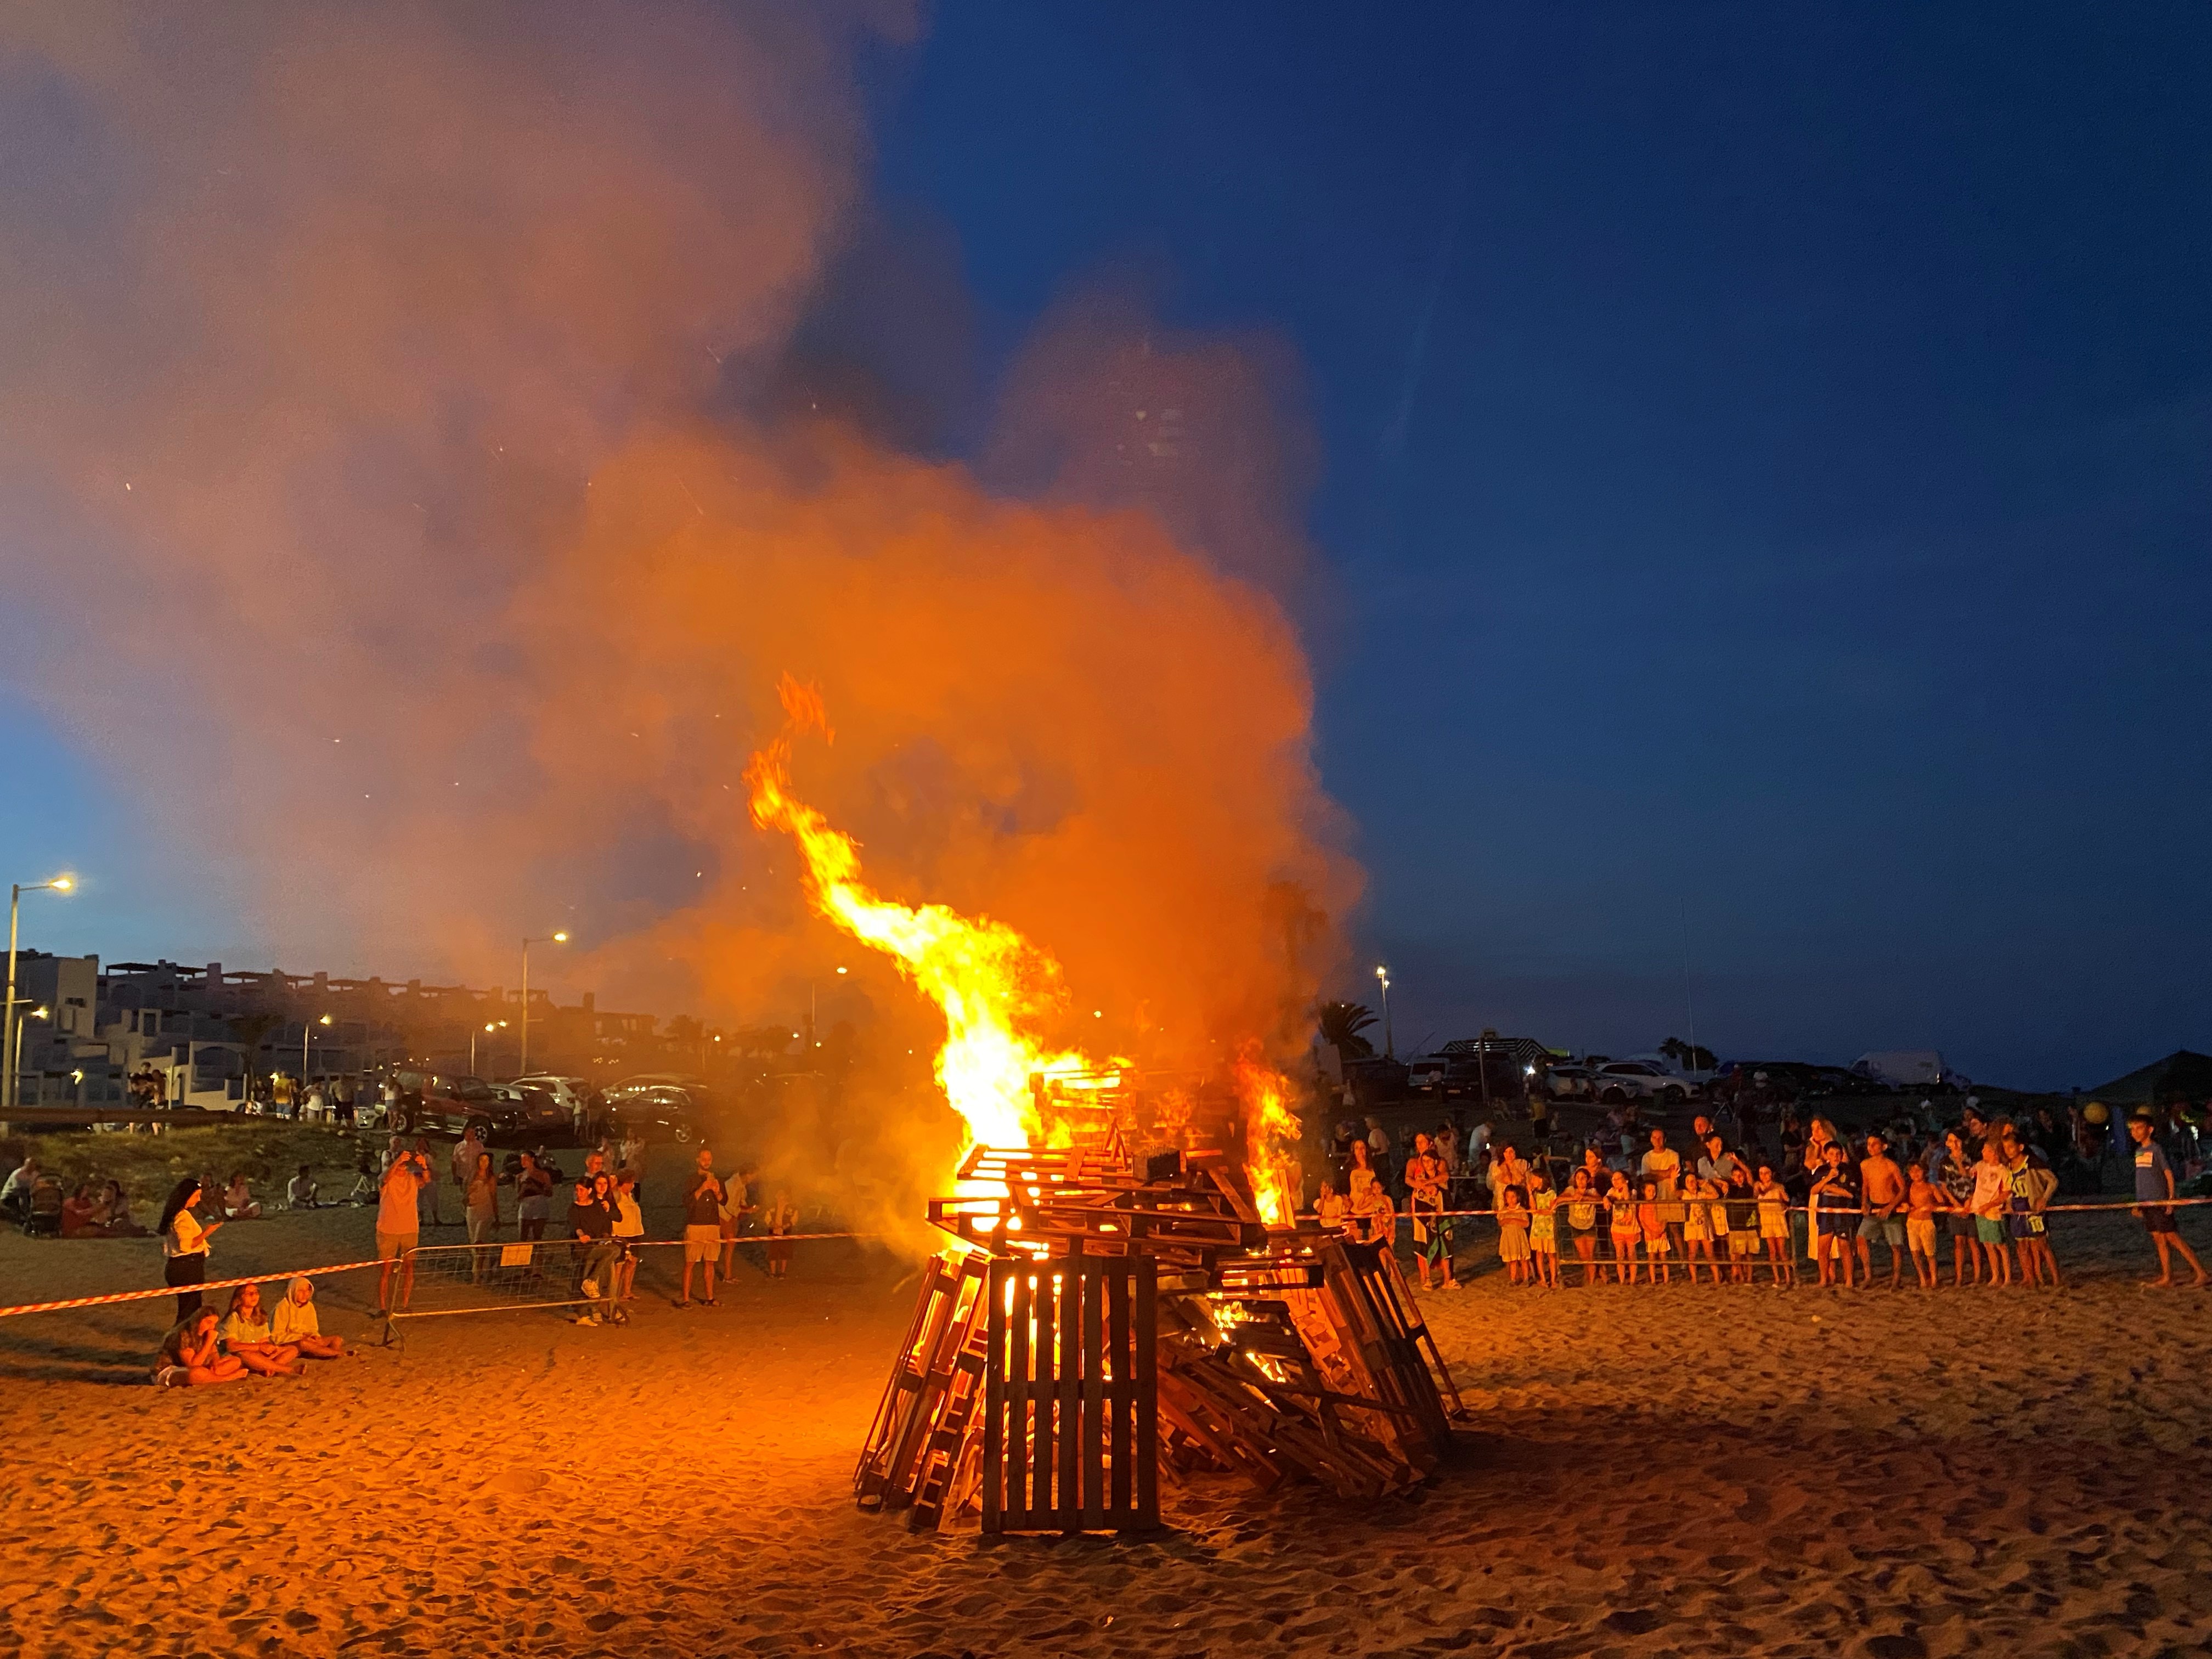 La Noche de San Juan en Mojácar se ha convertido ya en una celebración consolidada en el municipio, reuniendo durante el pasado fin de semana a centenares de personas en la Playa del Descargador desde la tarde.